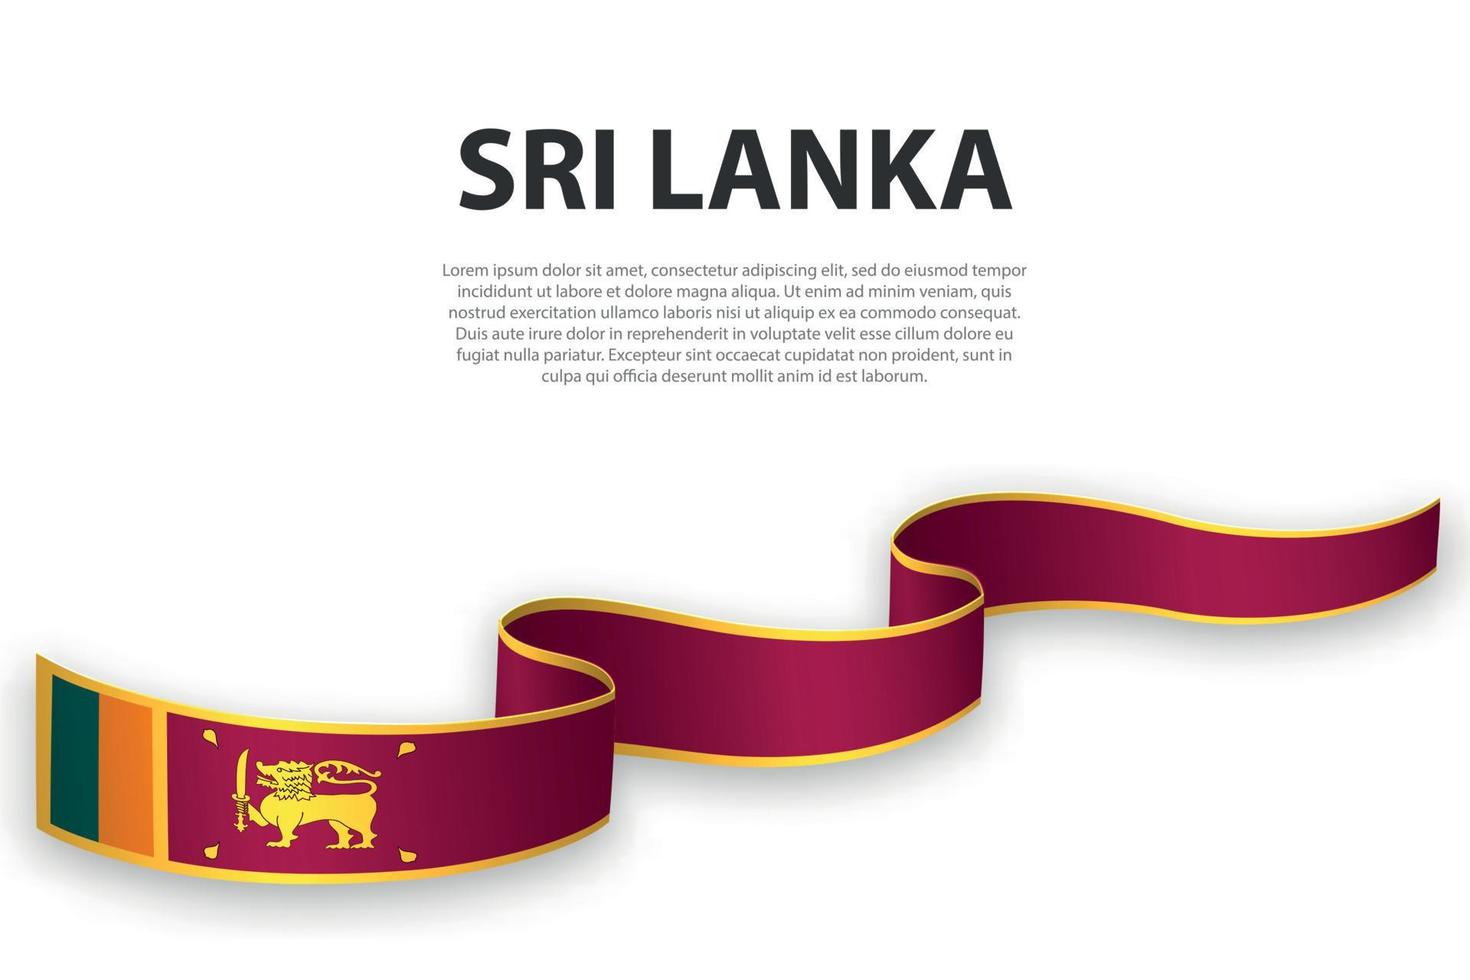 schwenkendes band oder banner mit flagge von sri lanka vektor